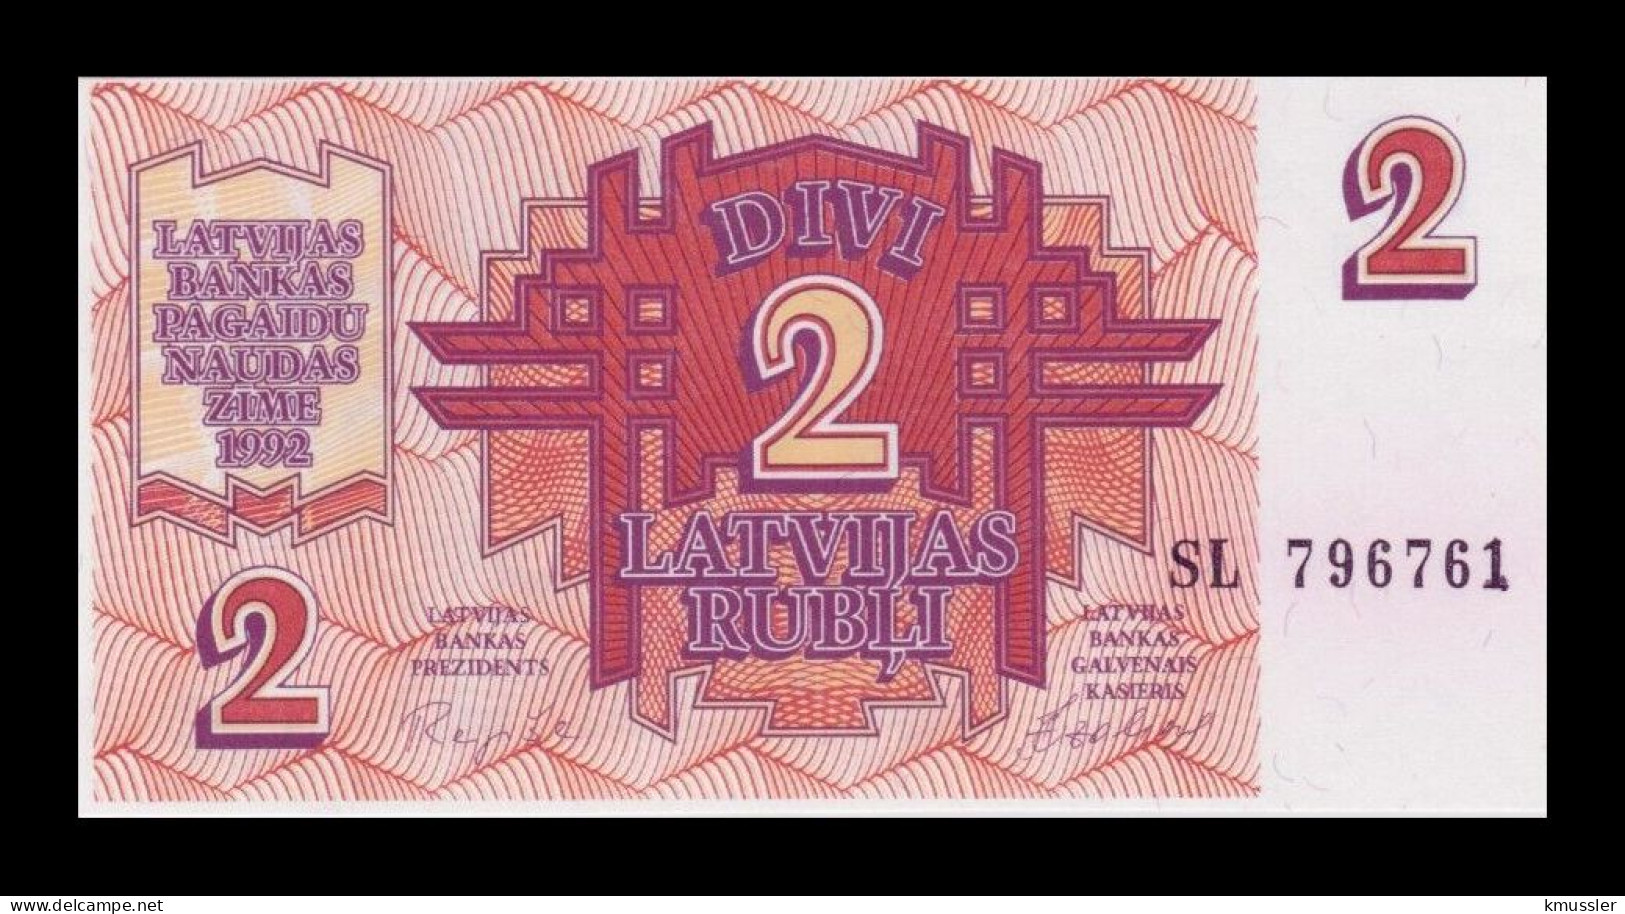 # # # Banknote Lettland (Latvijas) 2 Rubel (Rublis) 1992 UNC # # # - Latvia